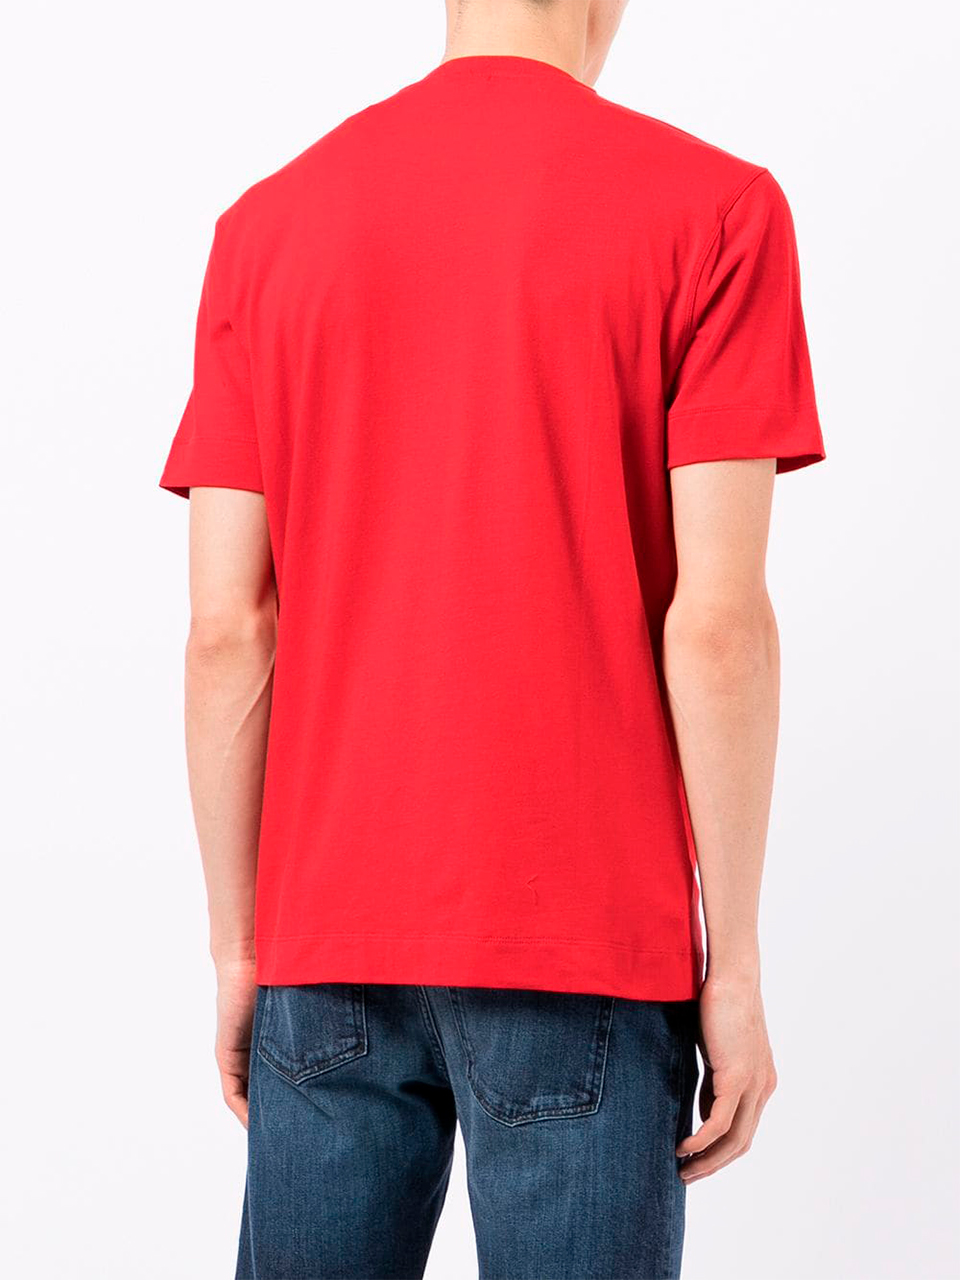 Imagem de: Camiseta Emporio Armani Vermelha com Estampa Bicolor